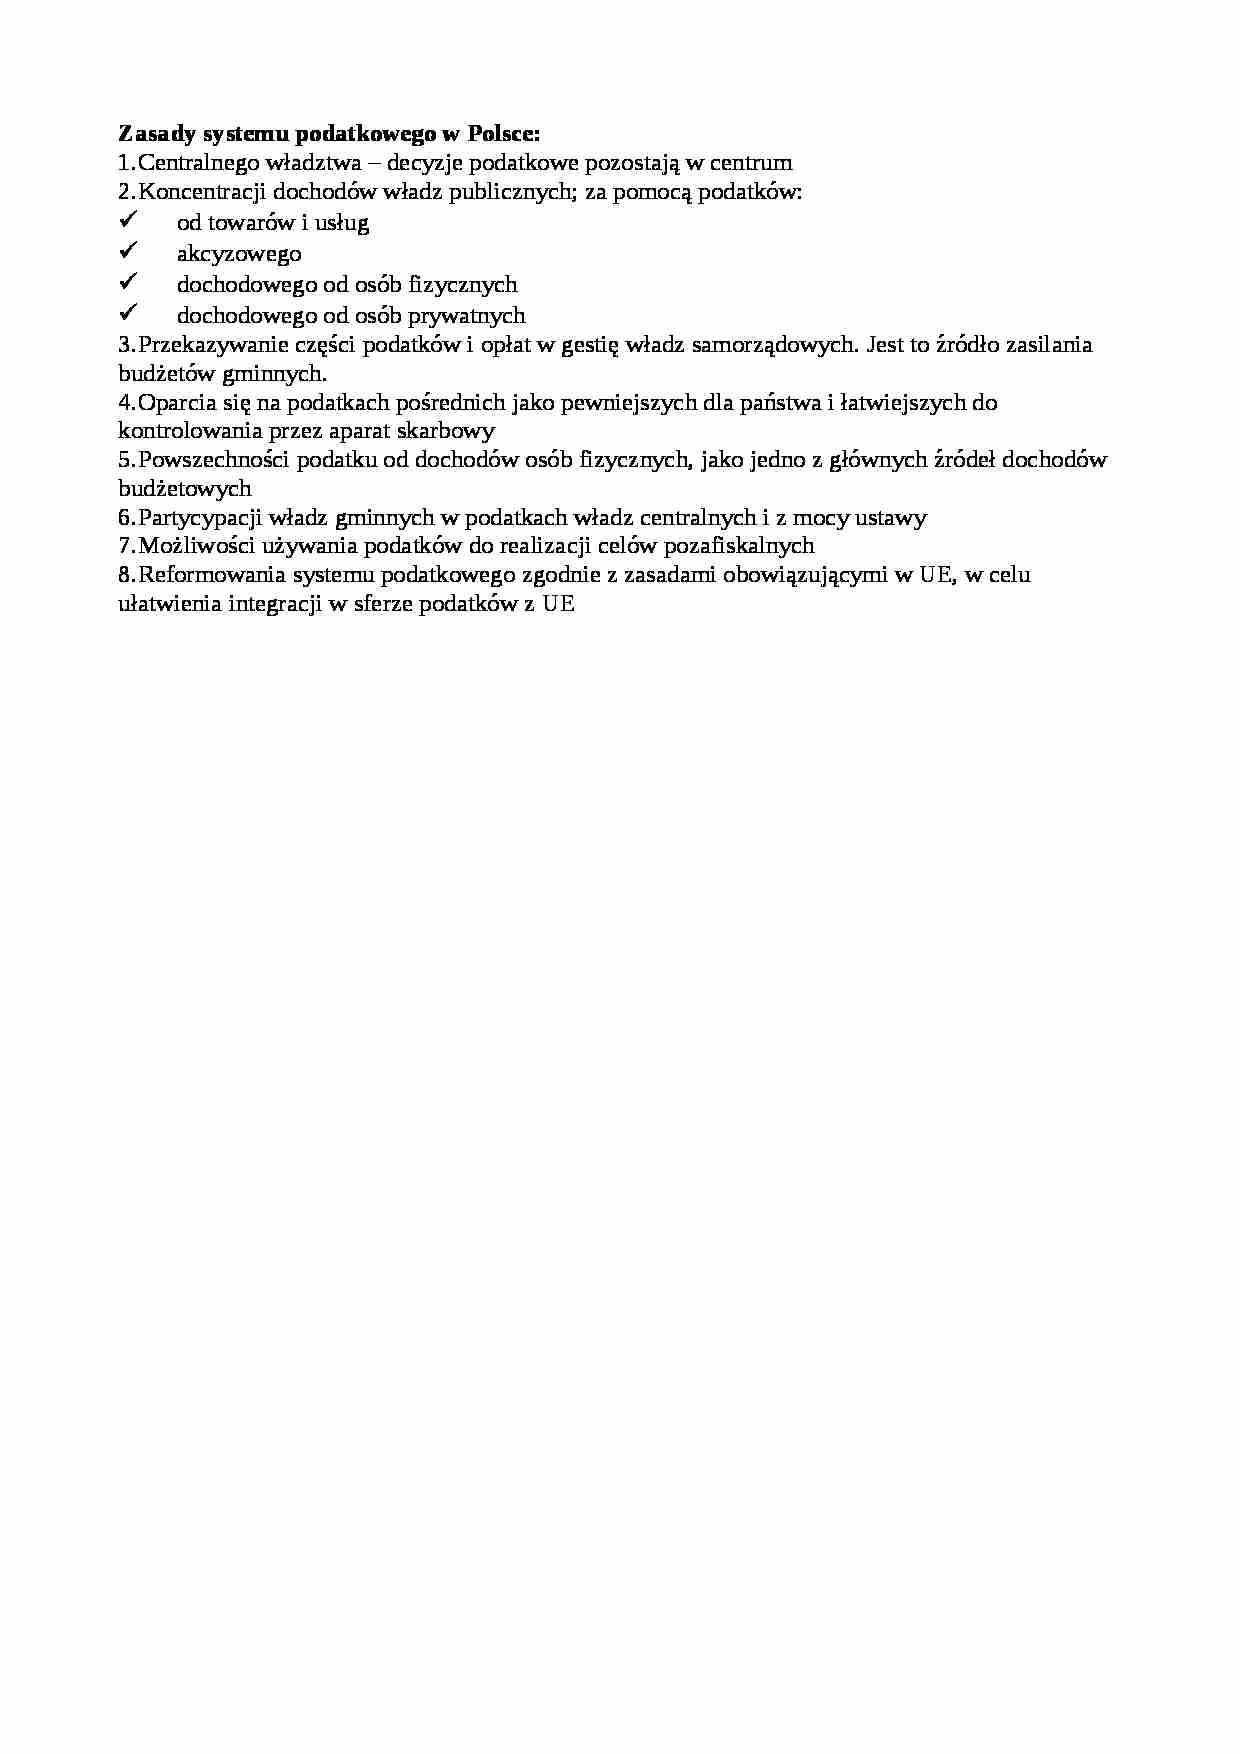 Zasady systemu podatkowego w Polsce - strona 1